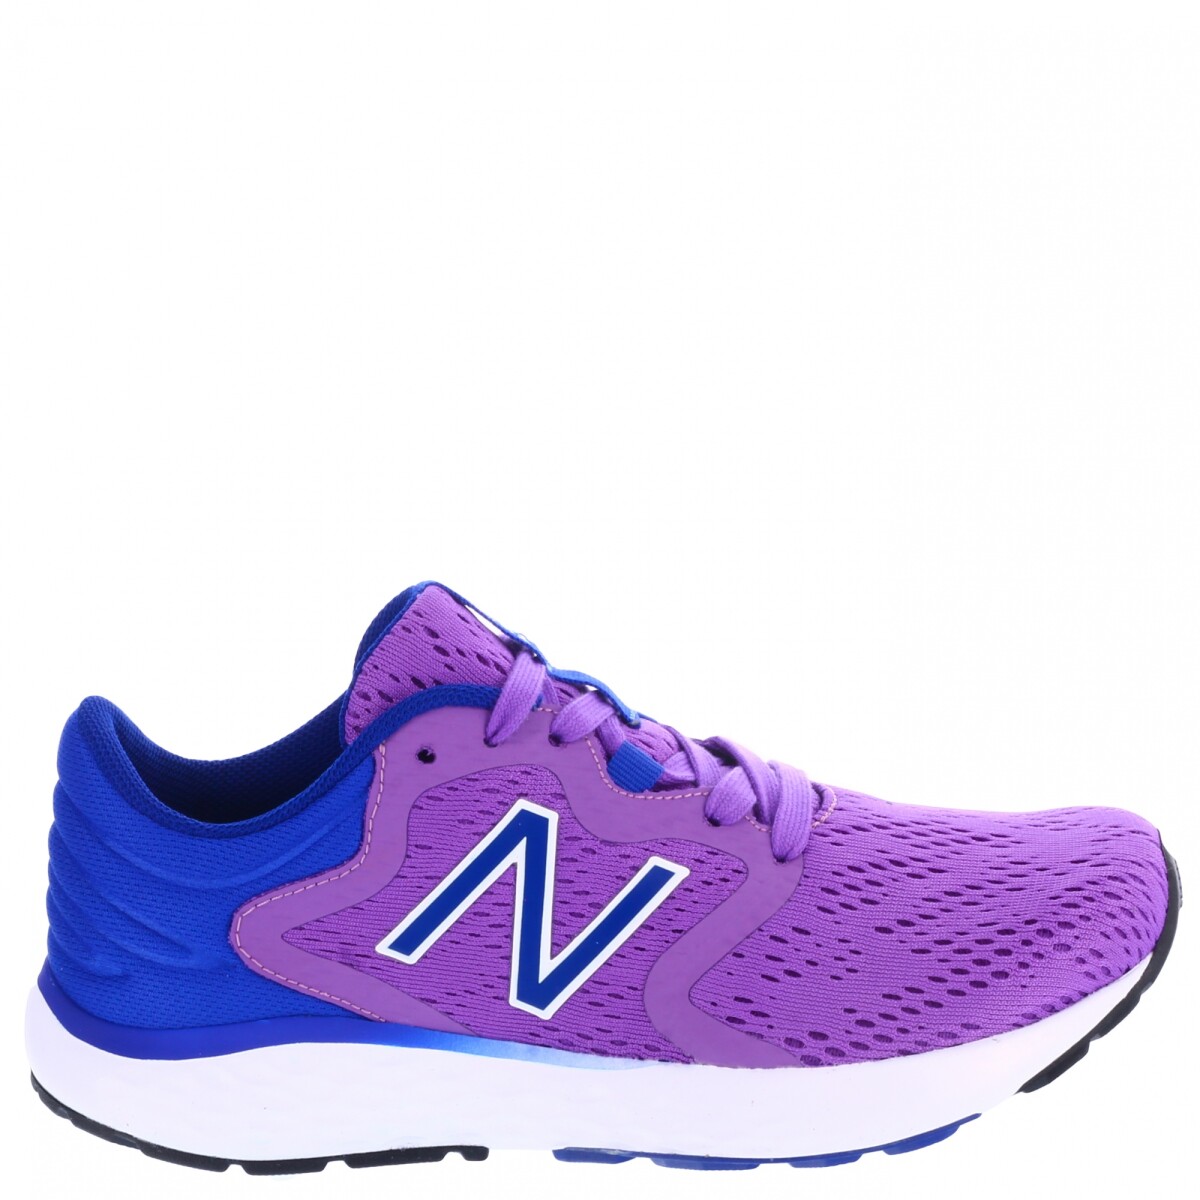 Running Wns New Balance - Purpura/Azul 